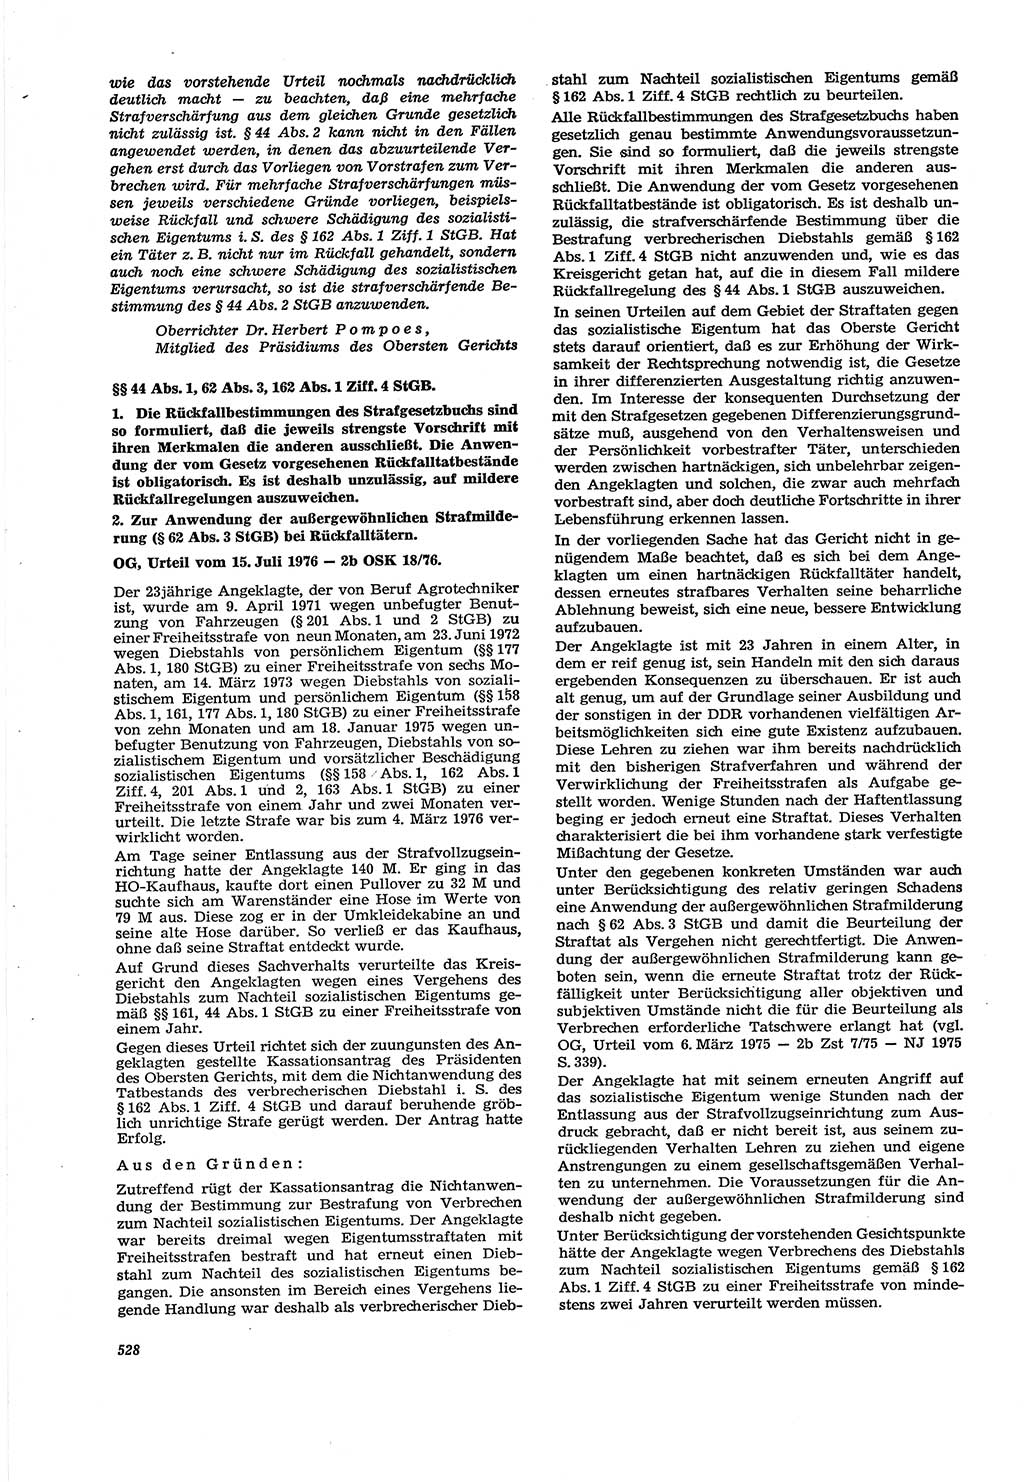 Neue Justiz (NJ), Zeitschrift für Recht und Rechtswissenschaft [Deutsche Demokratische Republik (DDR)], 30. Jahrgang 1976, Seite 528 (NJ DDR 1976, S. 528)